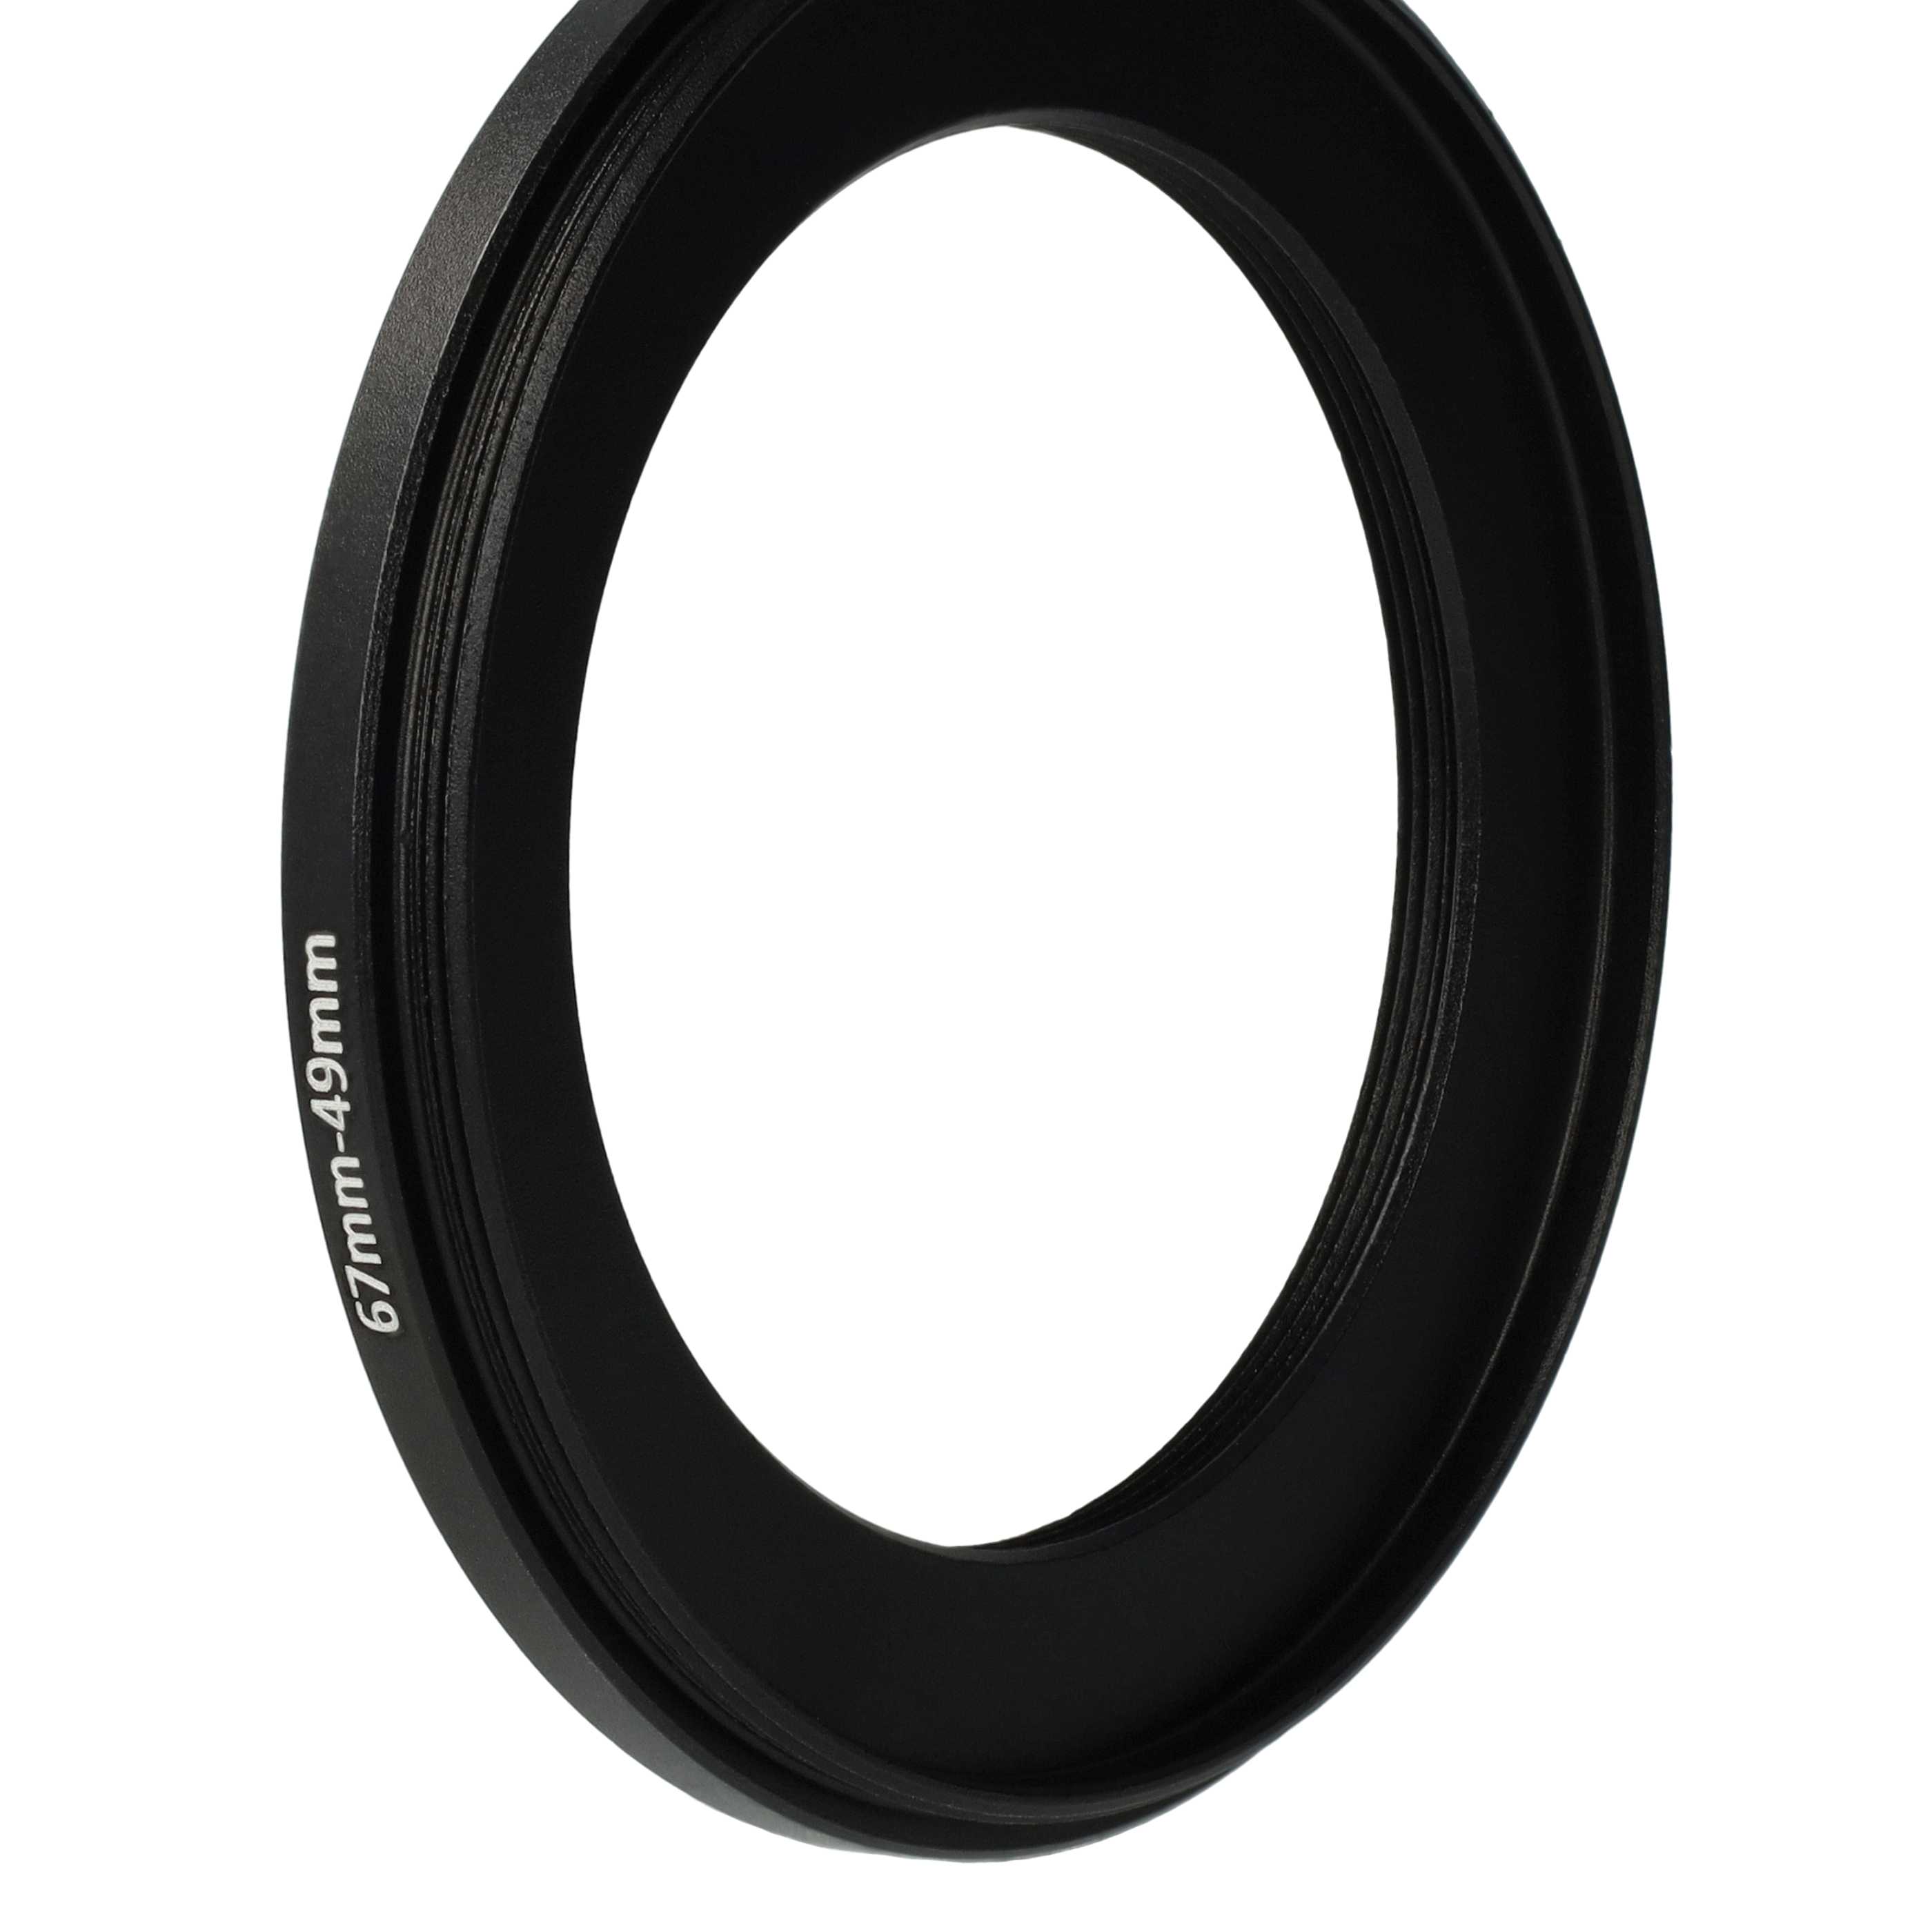 Anello adattatore step-down da 67 mm a 49 mm per obiettivo fotocamera - Adattatore filtro, metallo, nero